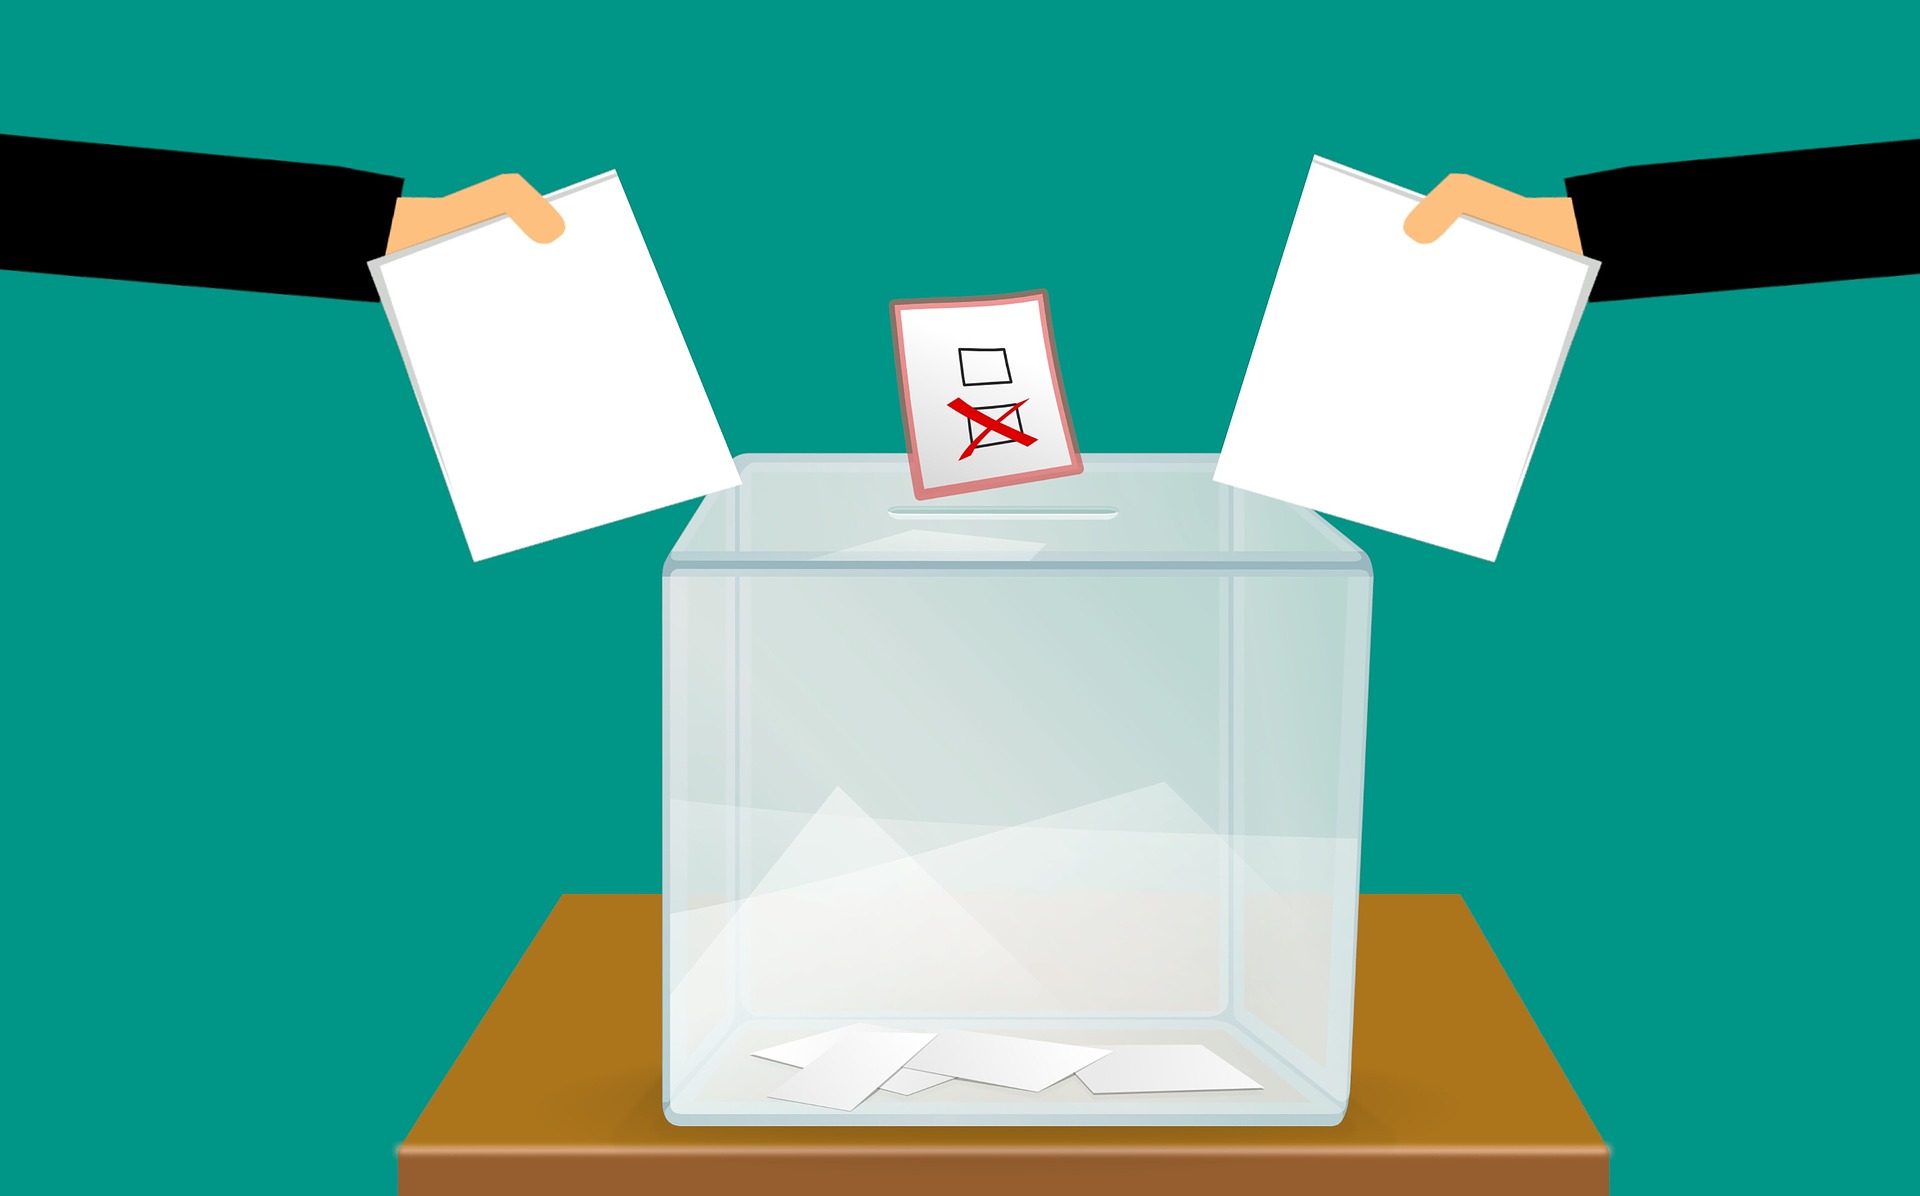 加拿大國會選舉 民調預測選情緊繃 | 芋傳媒 TaroNews